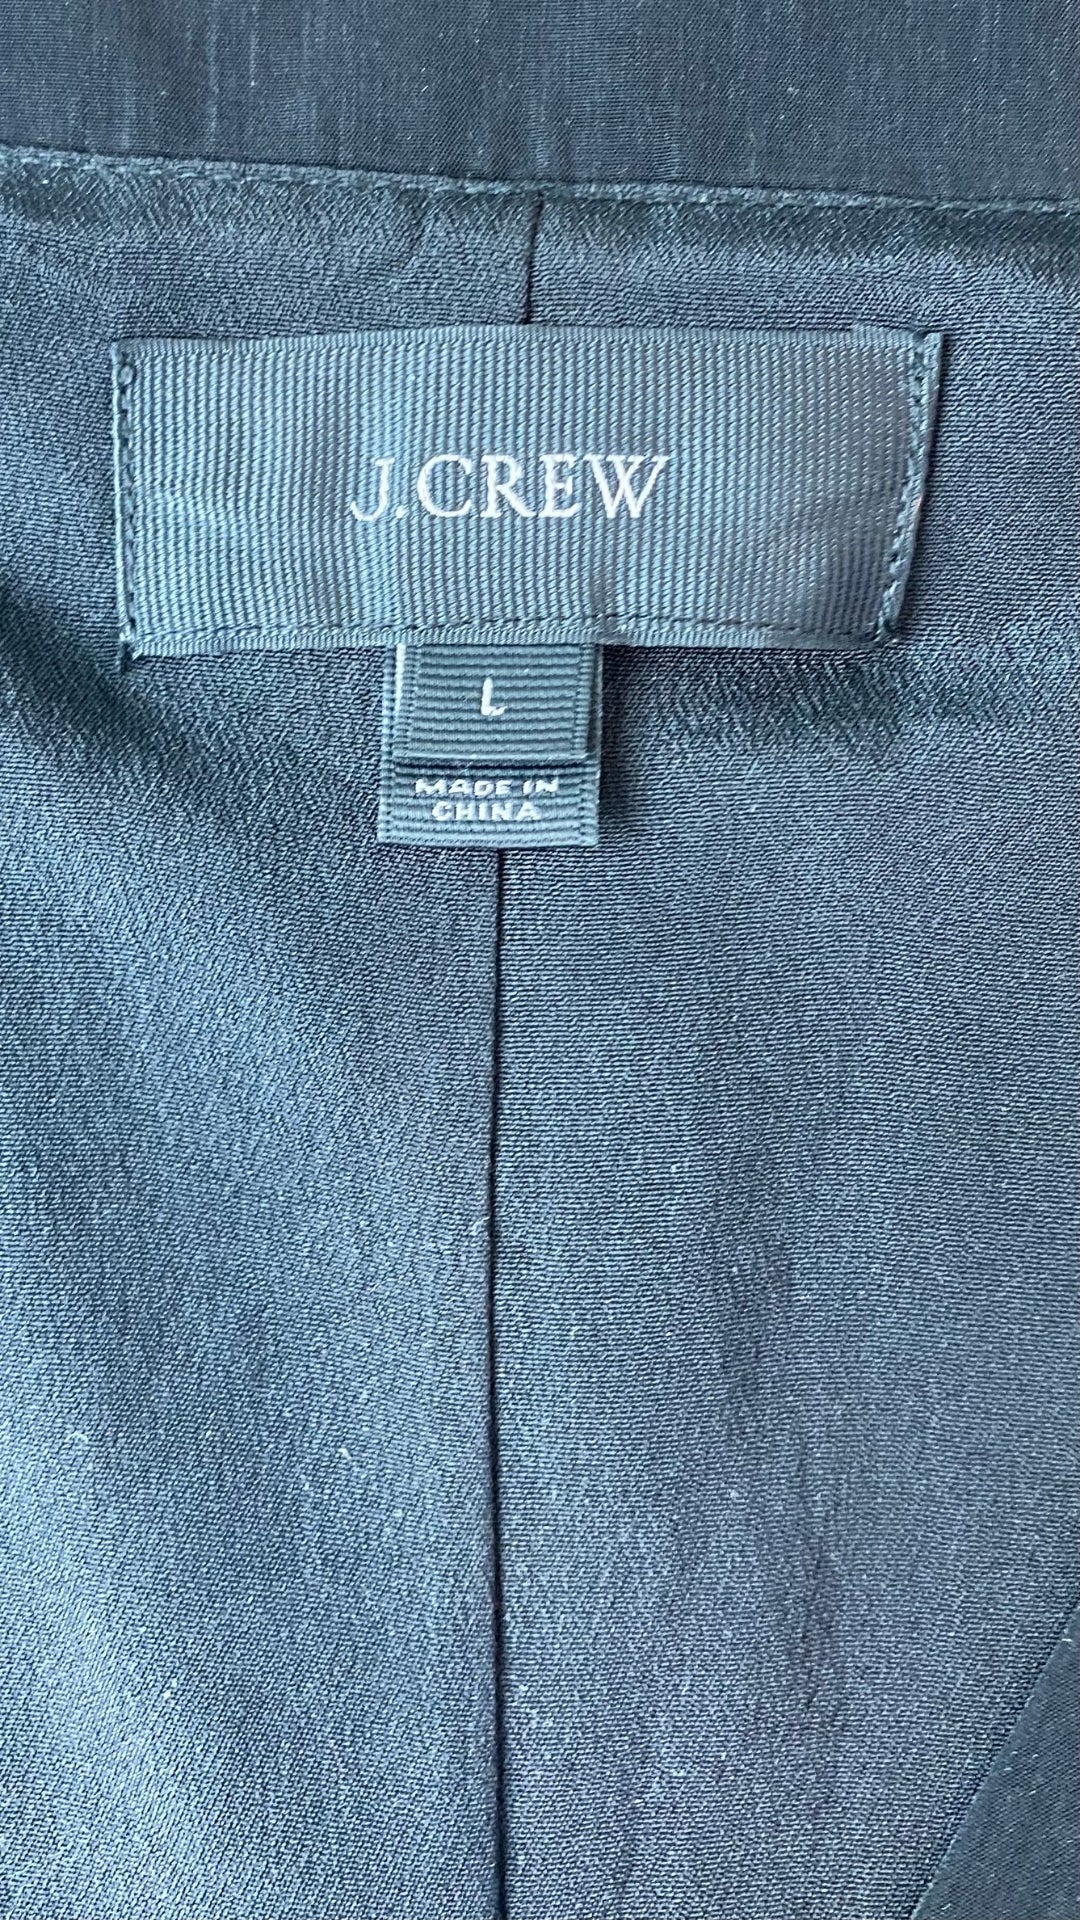 Robe noire jupe fluide ample J.Crew, taille large. Vue de l'étiquette de taille et marque.